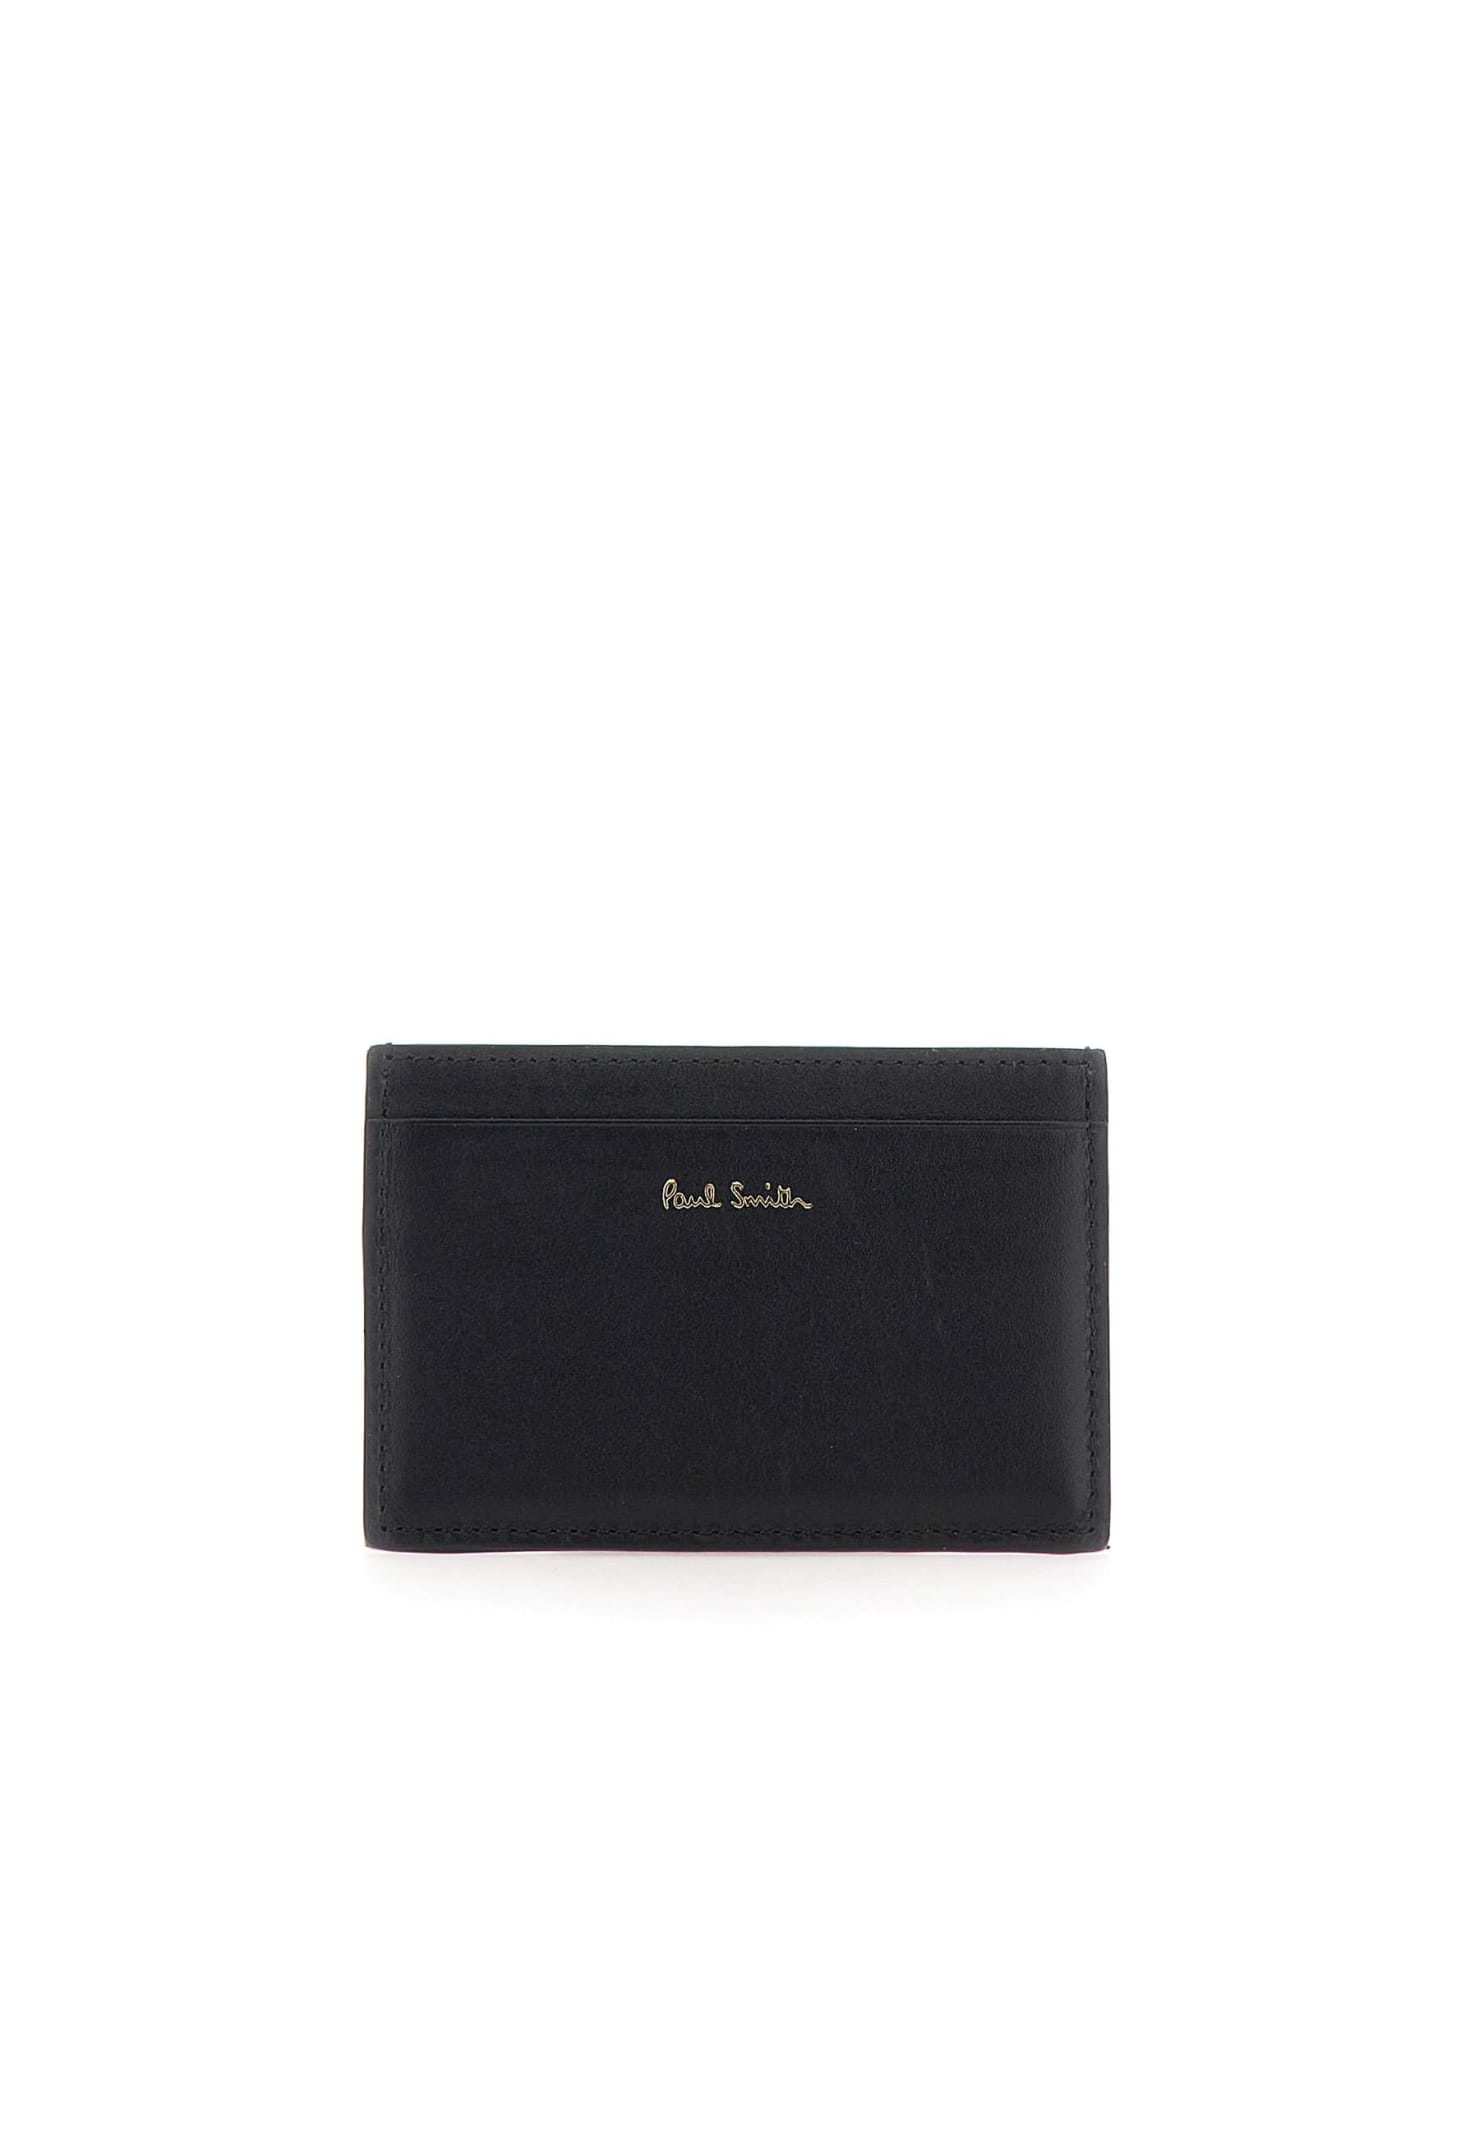 Card Holder Black Leather Wallet